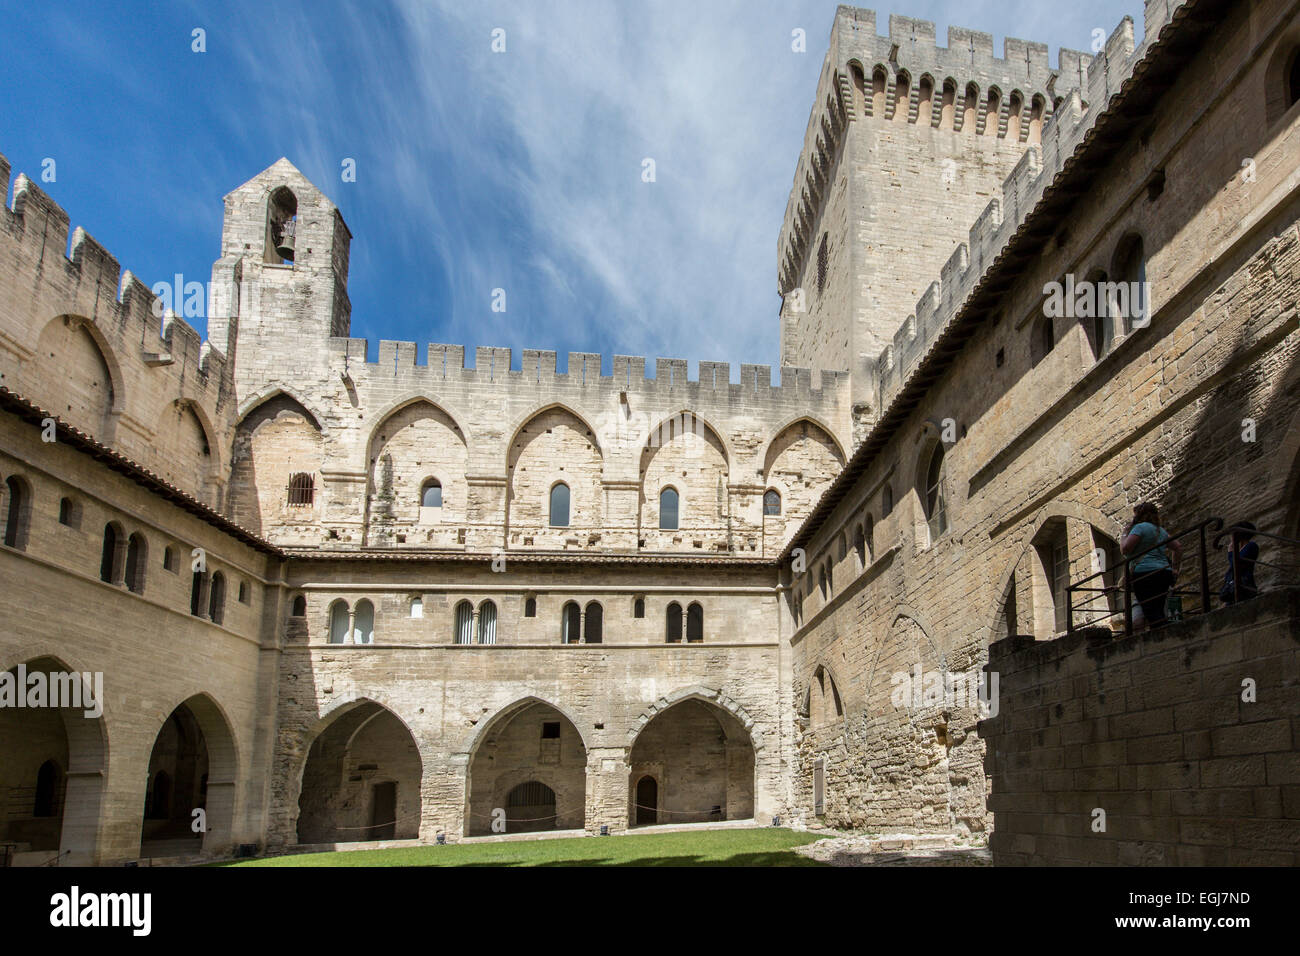 AVIGNON, Frankreich - 12. Mai 2014: Ein Blick auf den historischen päpstlichen Palast stammt aus dem Mittelalter. Stockfoto